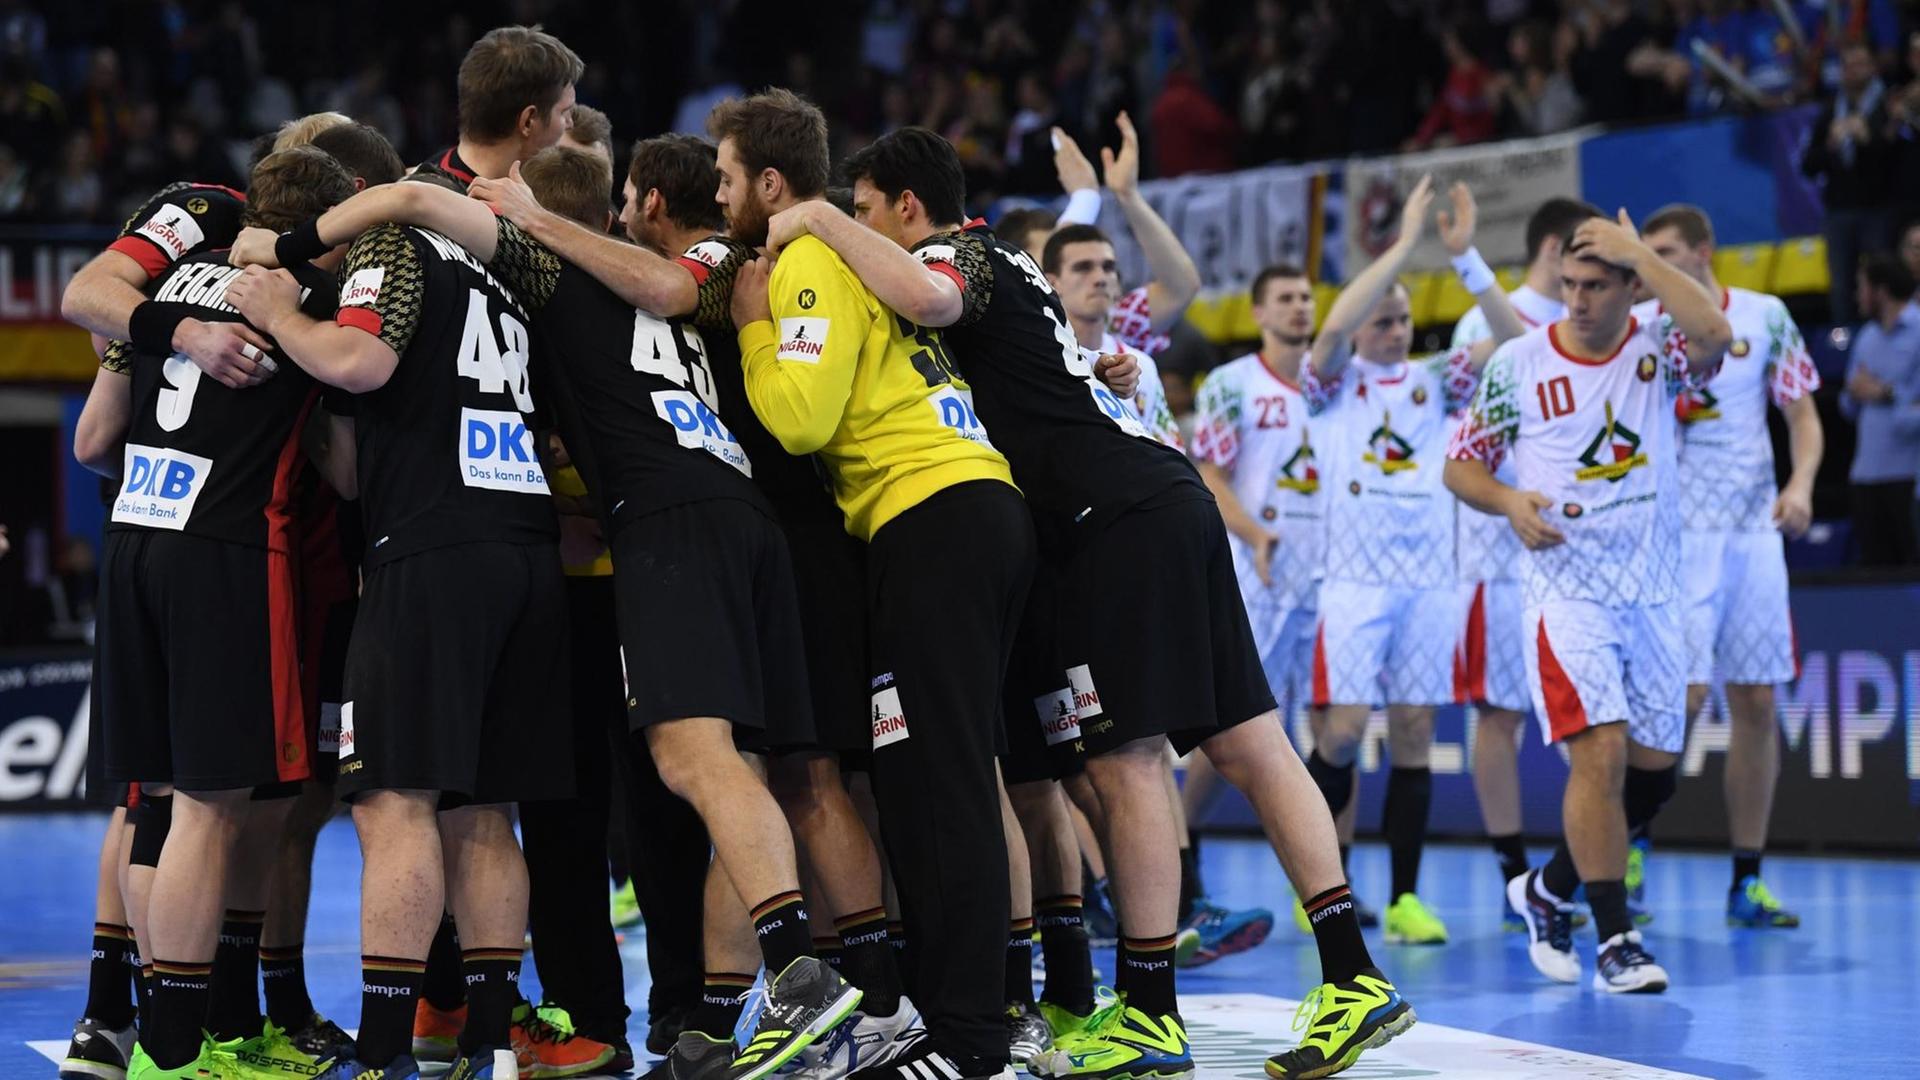 Handball WM Männer: Weißrussland - Deutschland, Vorrunde, Gruppe C, 4. Spieltag am 18.01.2017 in Rouen, Frankreich. Deutschlands Spieler (l) freuen sich über den Sieg.